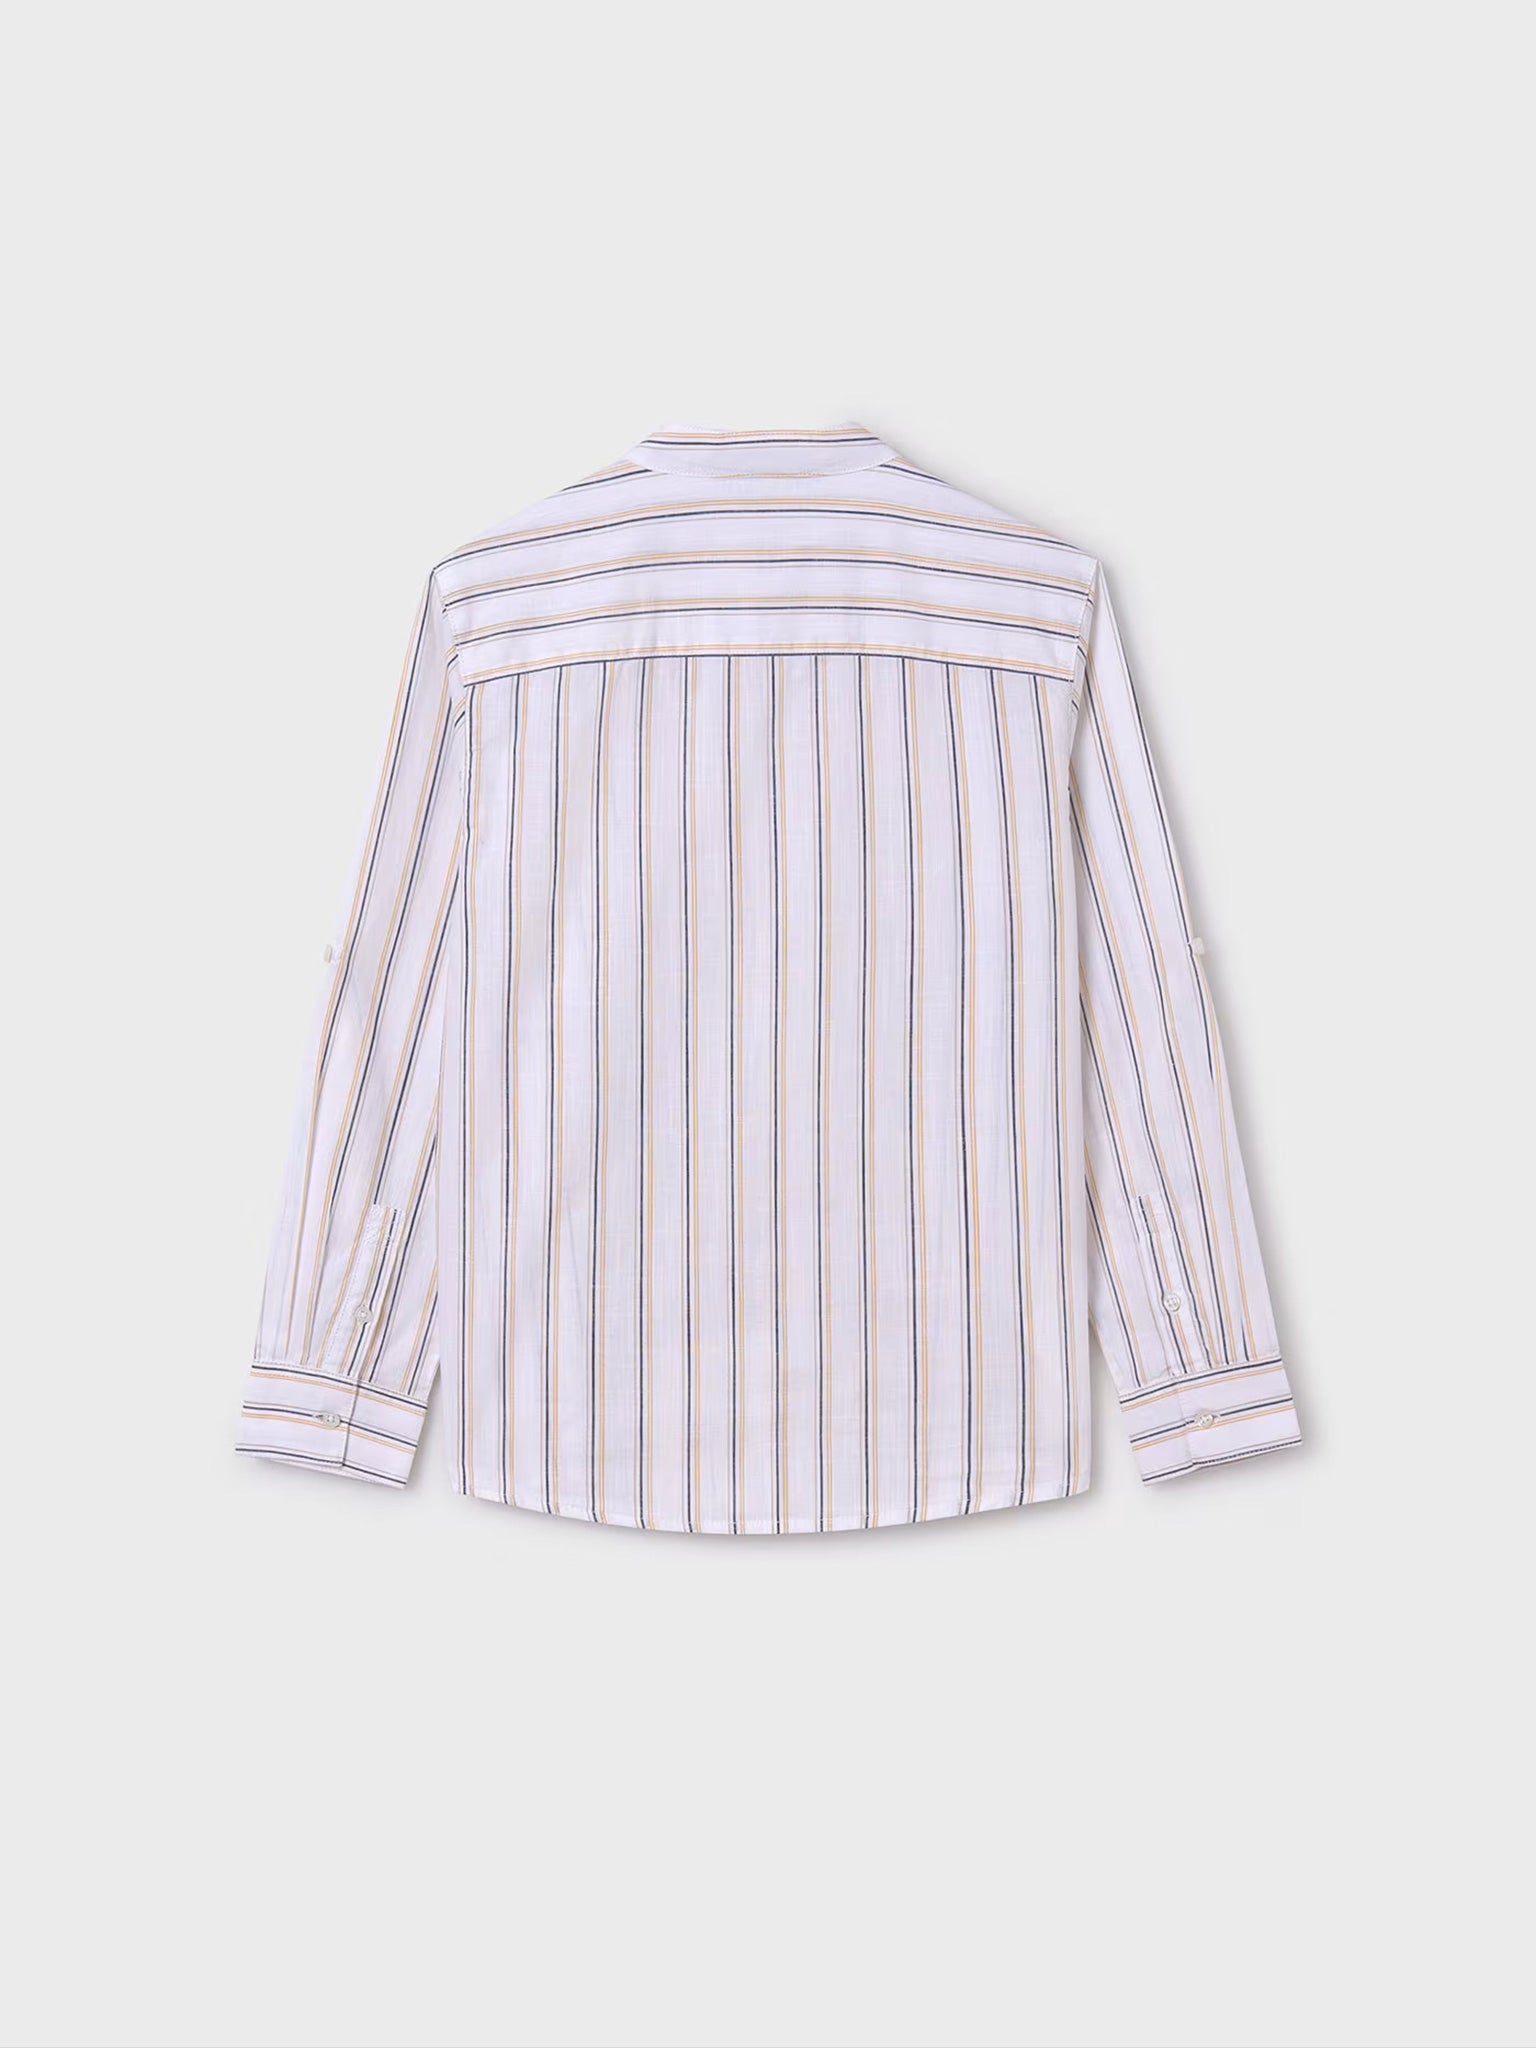 Εφηβικό πουκάμισο μακρυμάνικο ρίγες Better Cotton 24-06122-029 | 24-06122-029